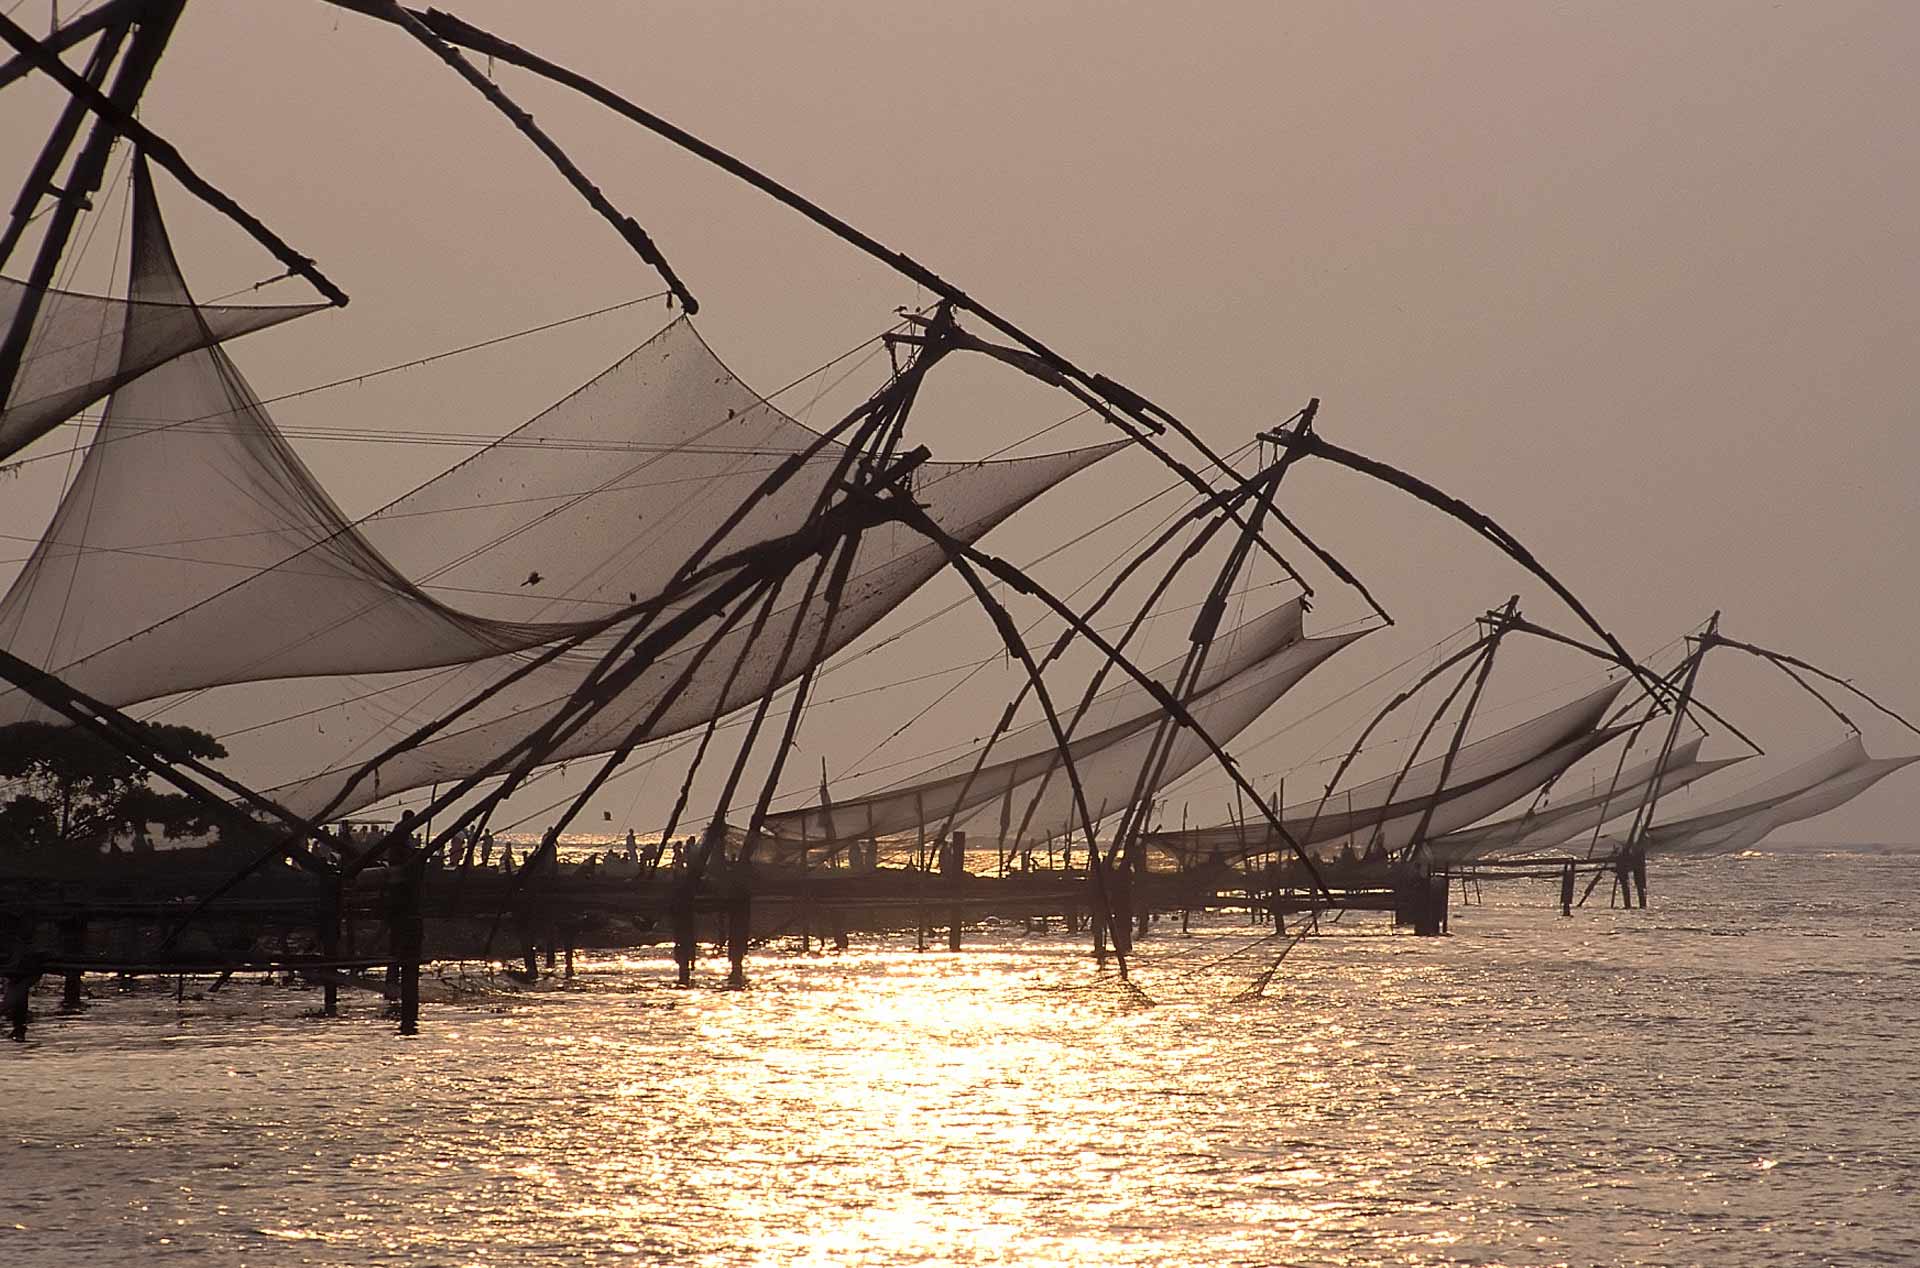 Chinese fishing nets (Cheena vala) at sunset, Kochi, Kerala, India